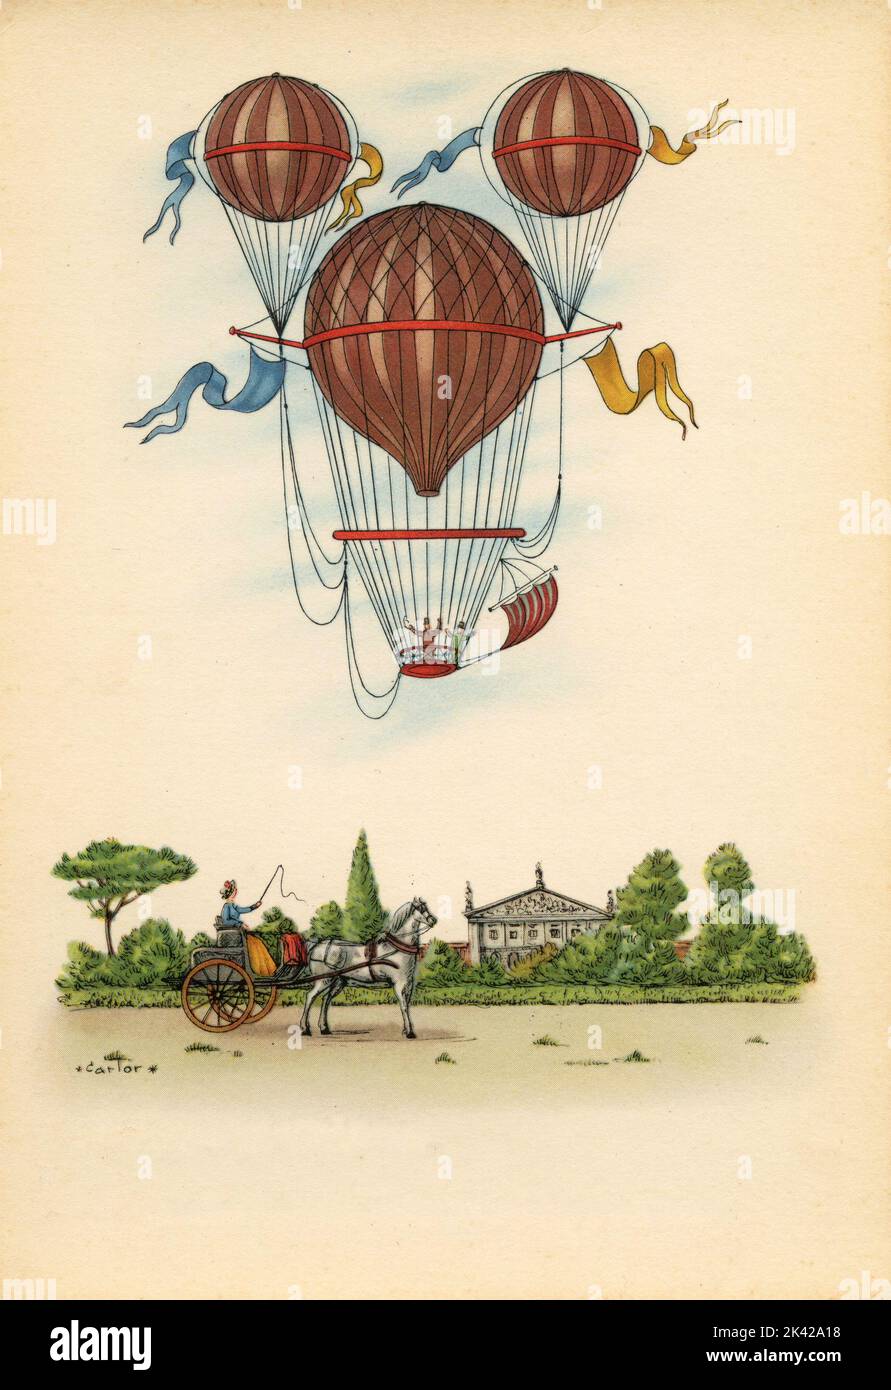 Illustrazione dell'ascensione con il ballone ad aria calda di Margat, Francia 1850 Foto Stock